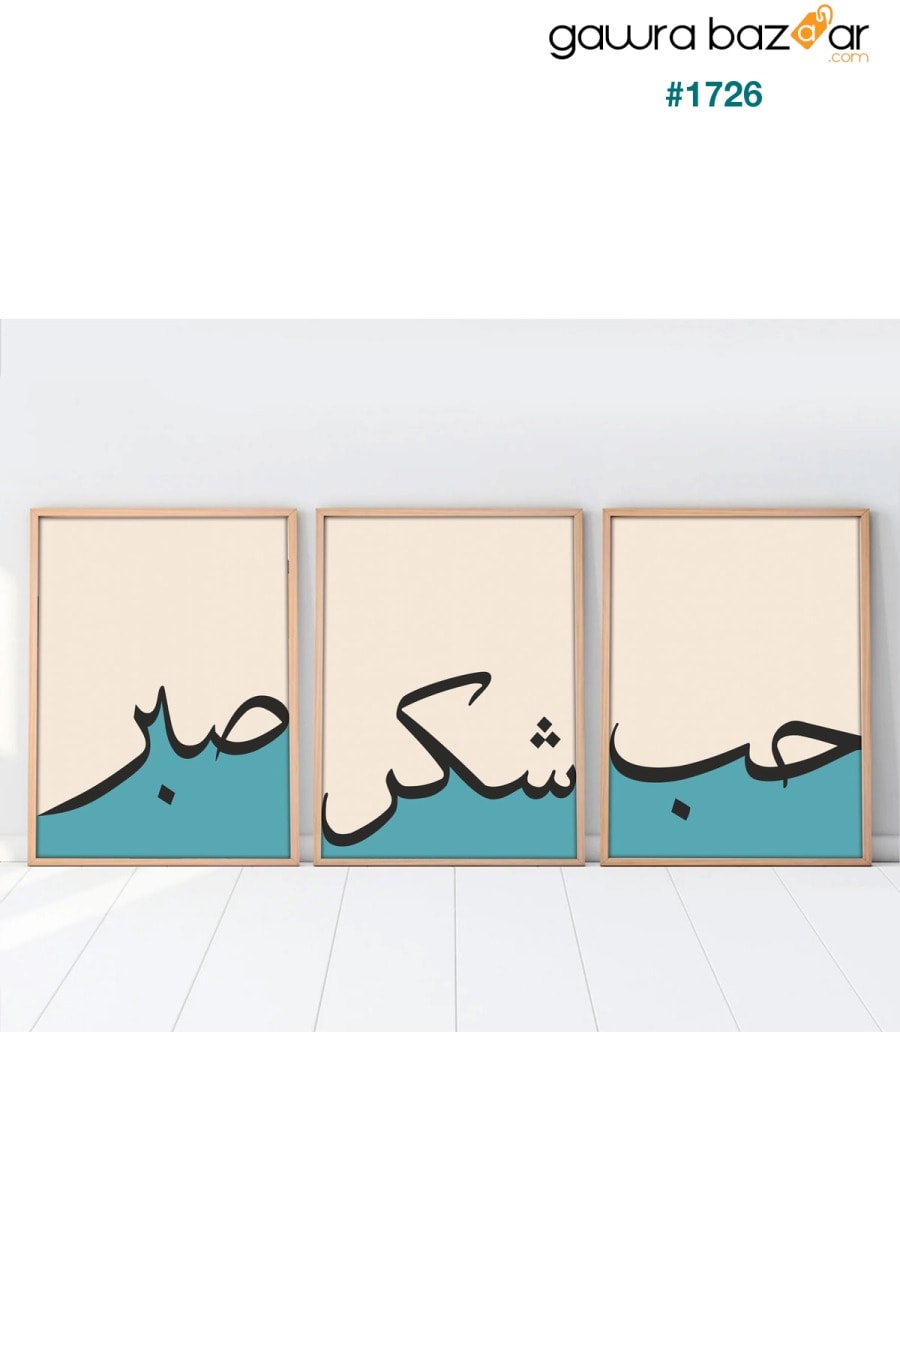 صبر ، امتنان ، لوحة عربية بإطار خشبي من 3 قطع huhuli 1